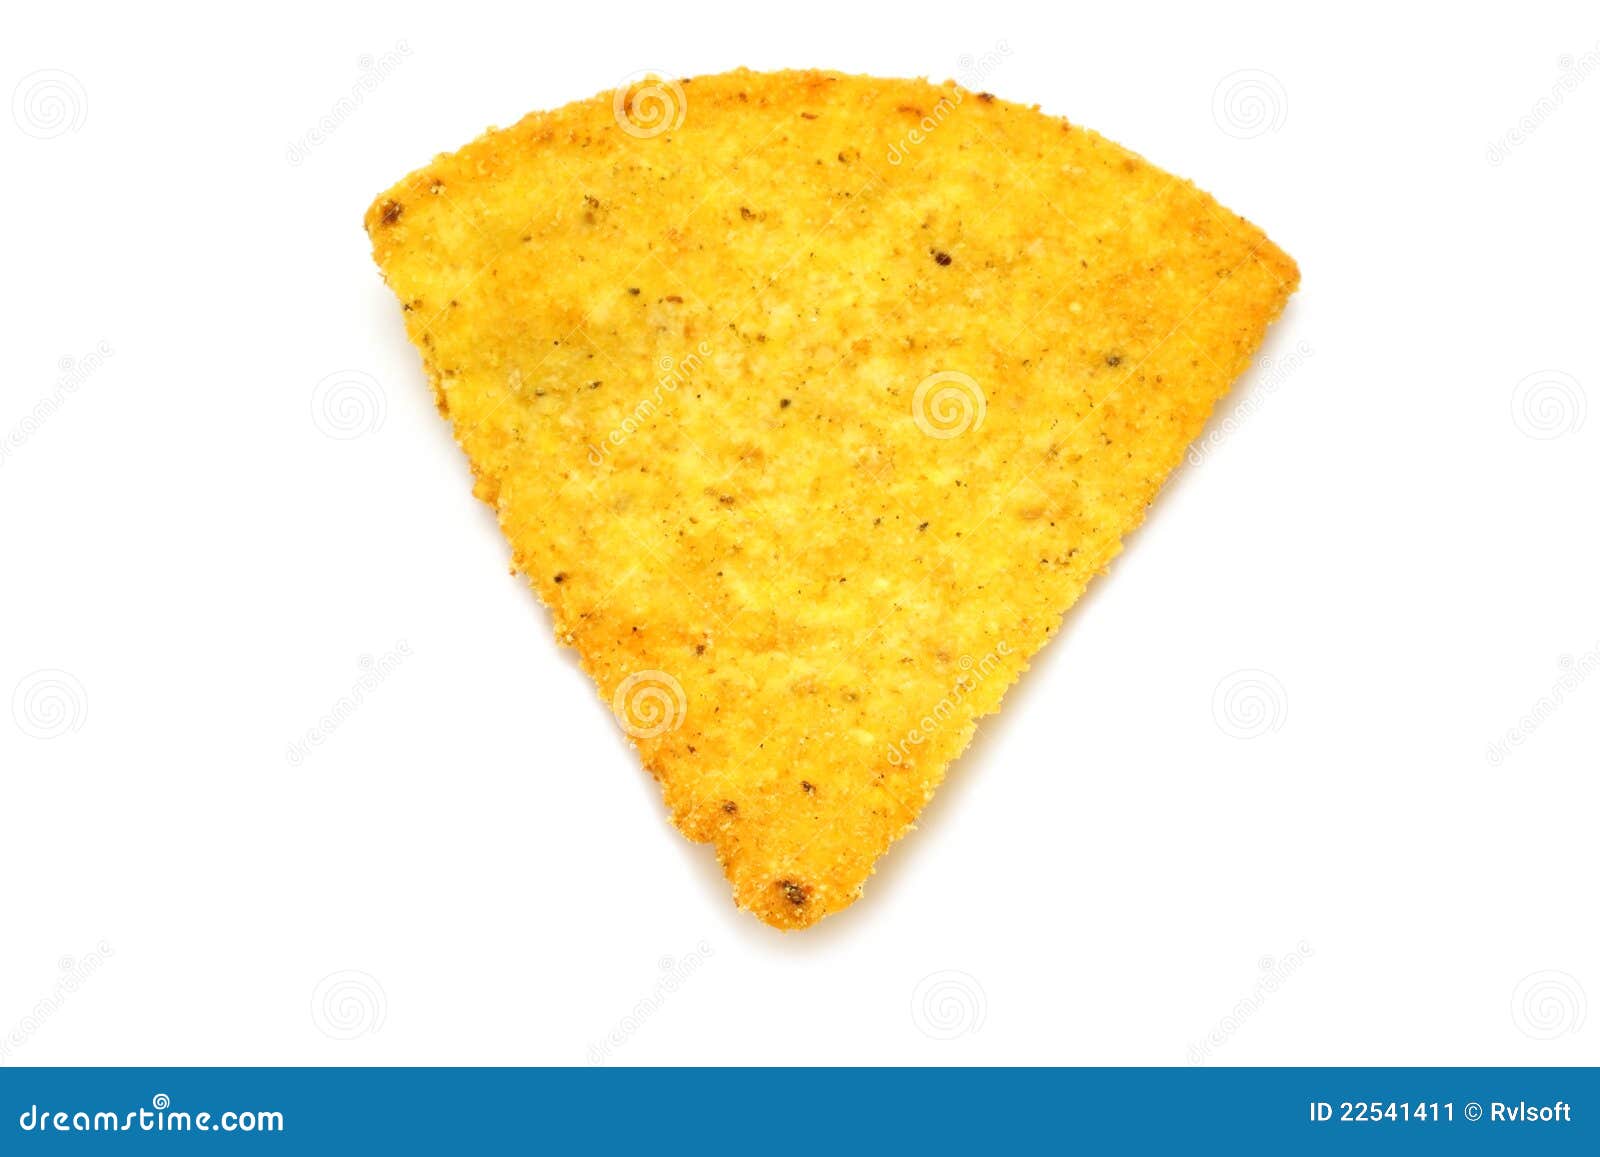 mexican nacho